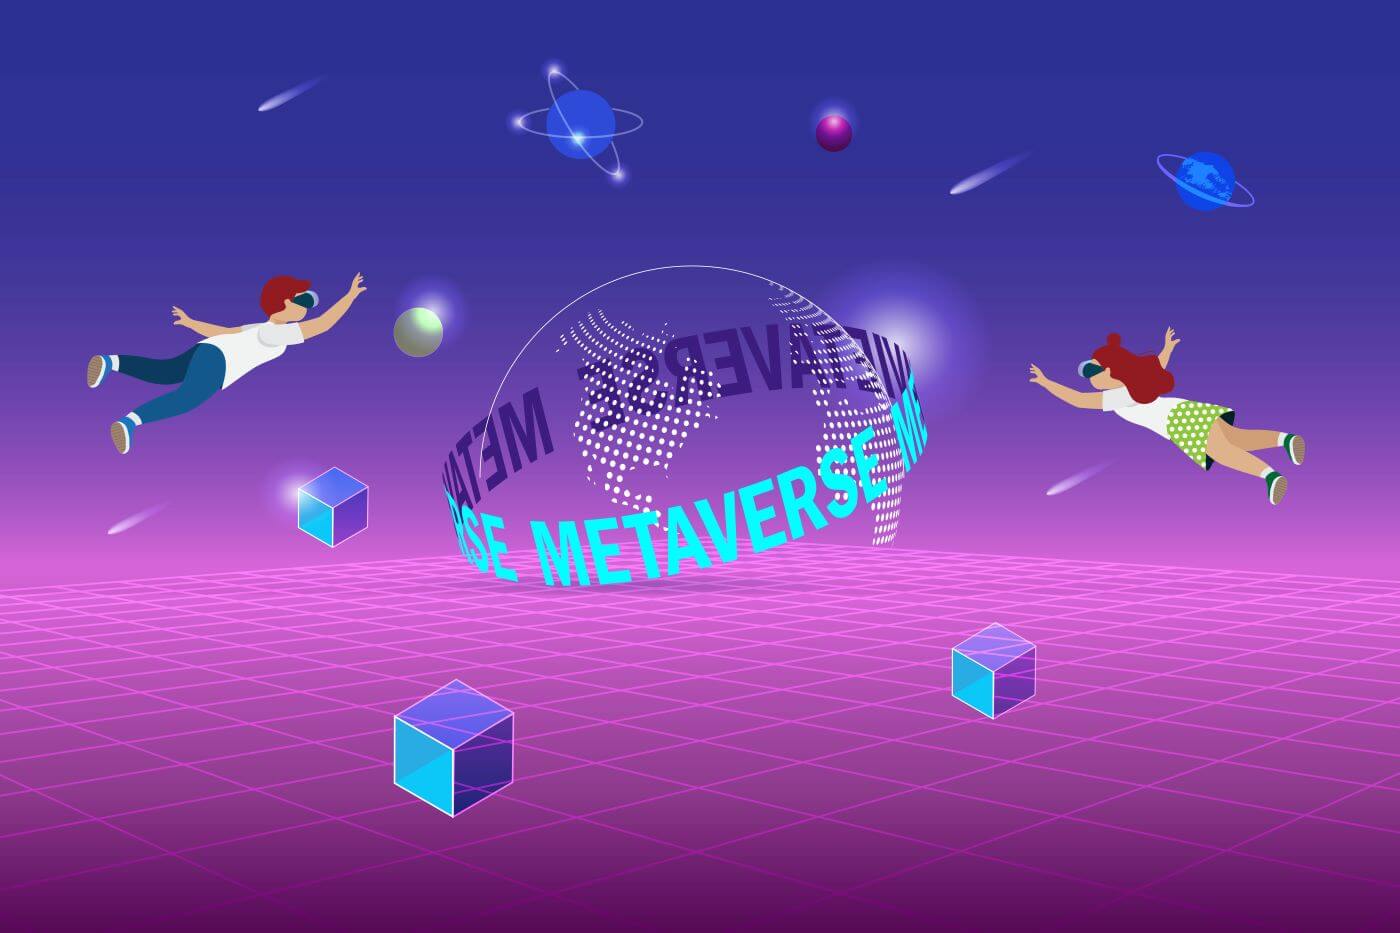 图片展示了两个卡通人物在充满科技感的虚拟空间中飞翔，周围有浮动的多维数据块，中心是写着“METAVERSE”的半球体。